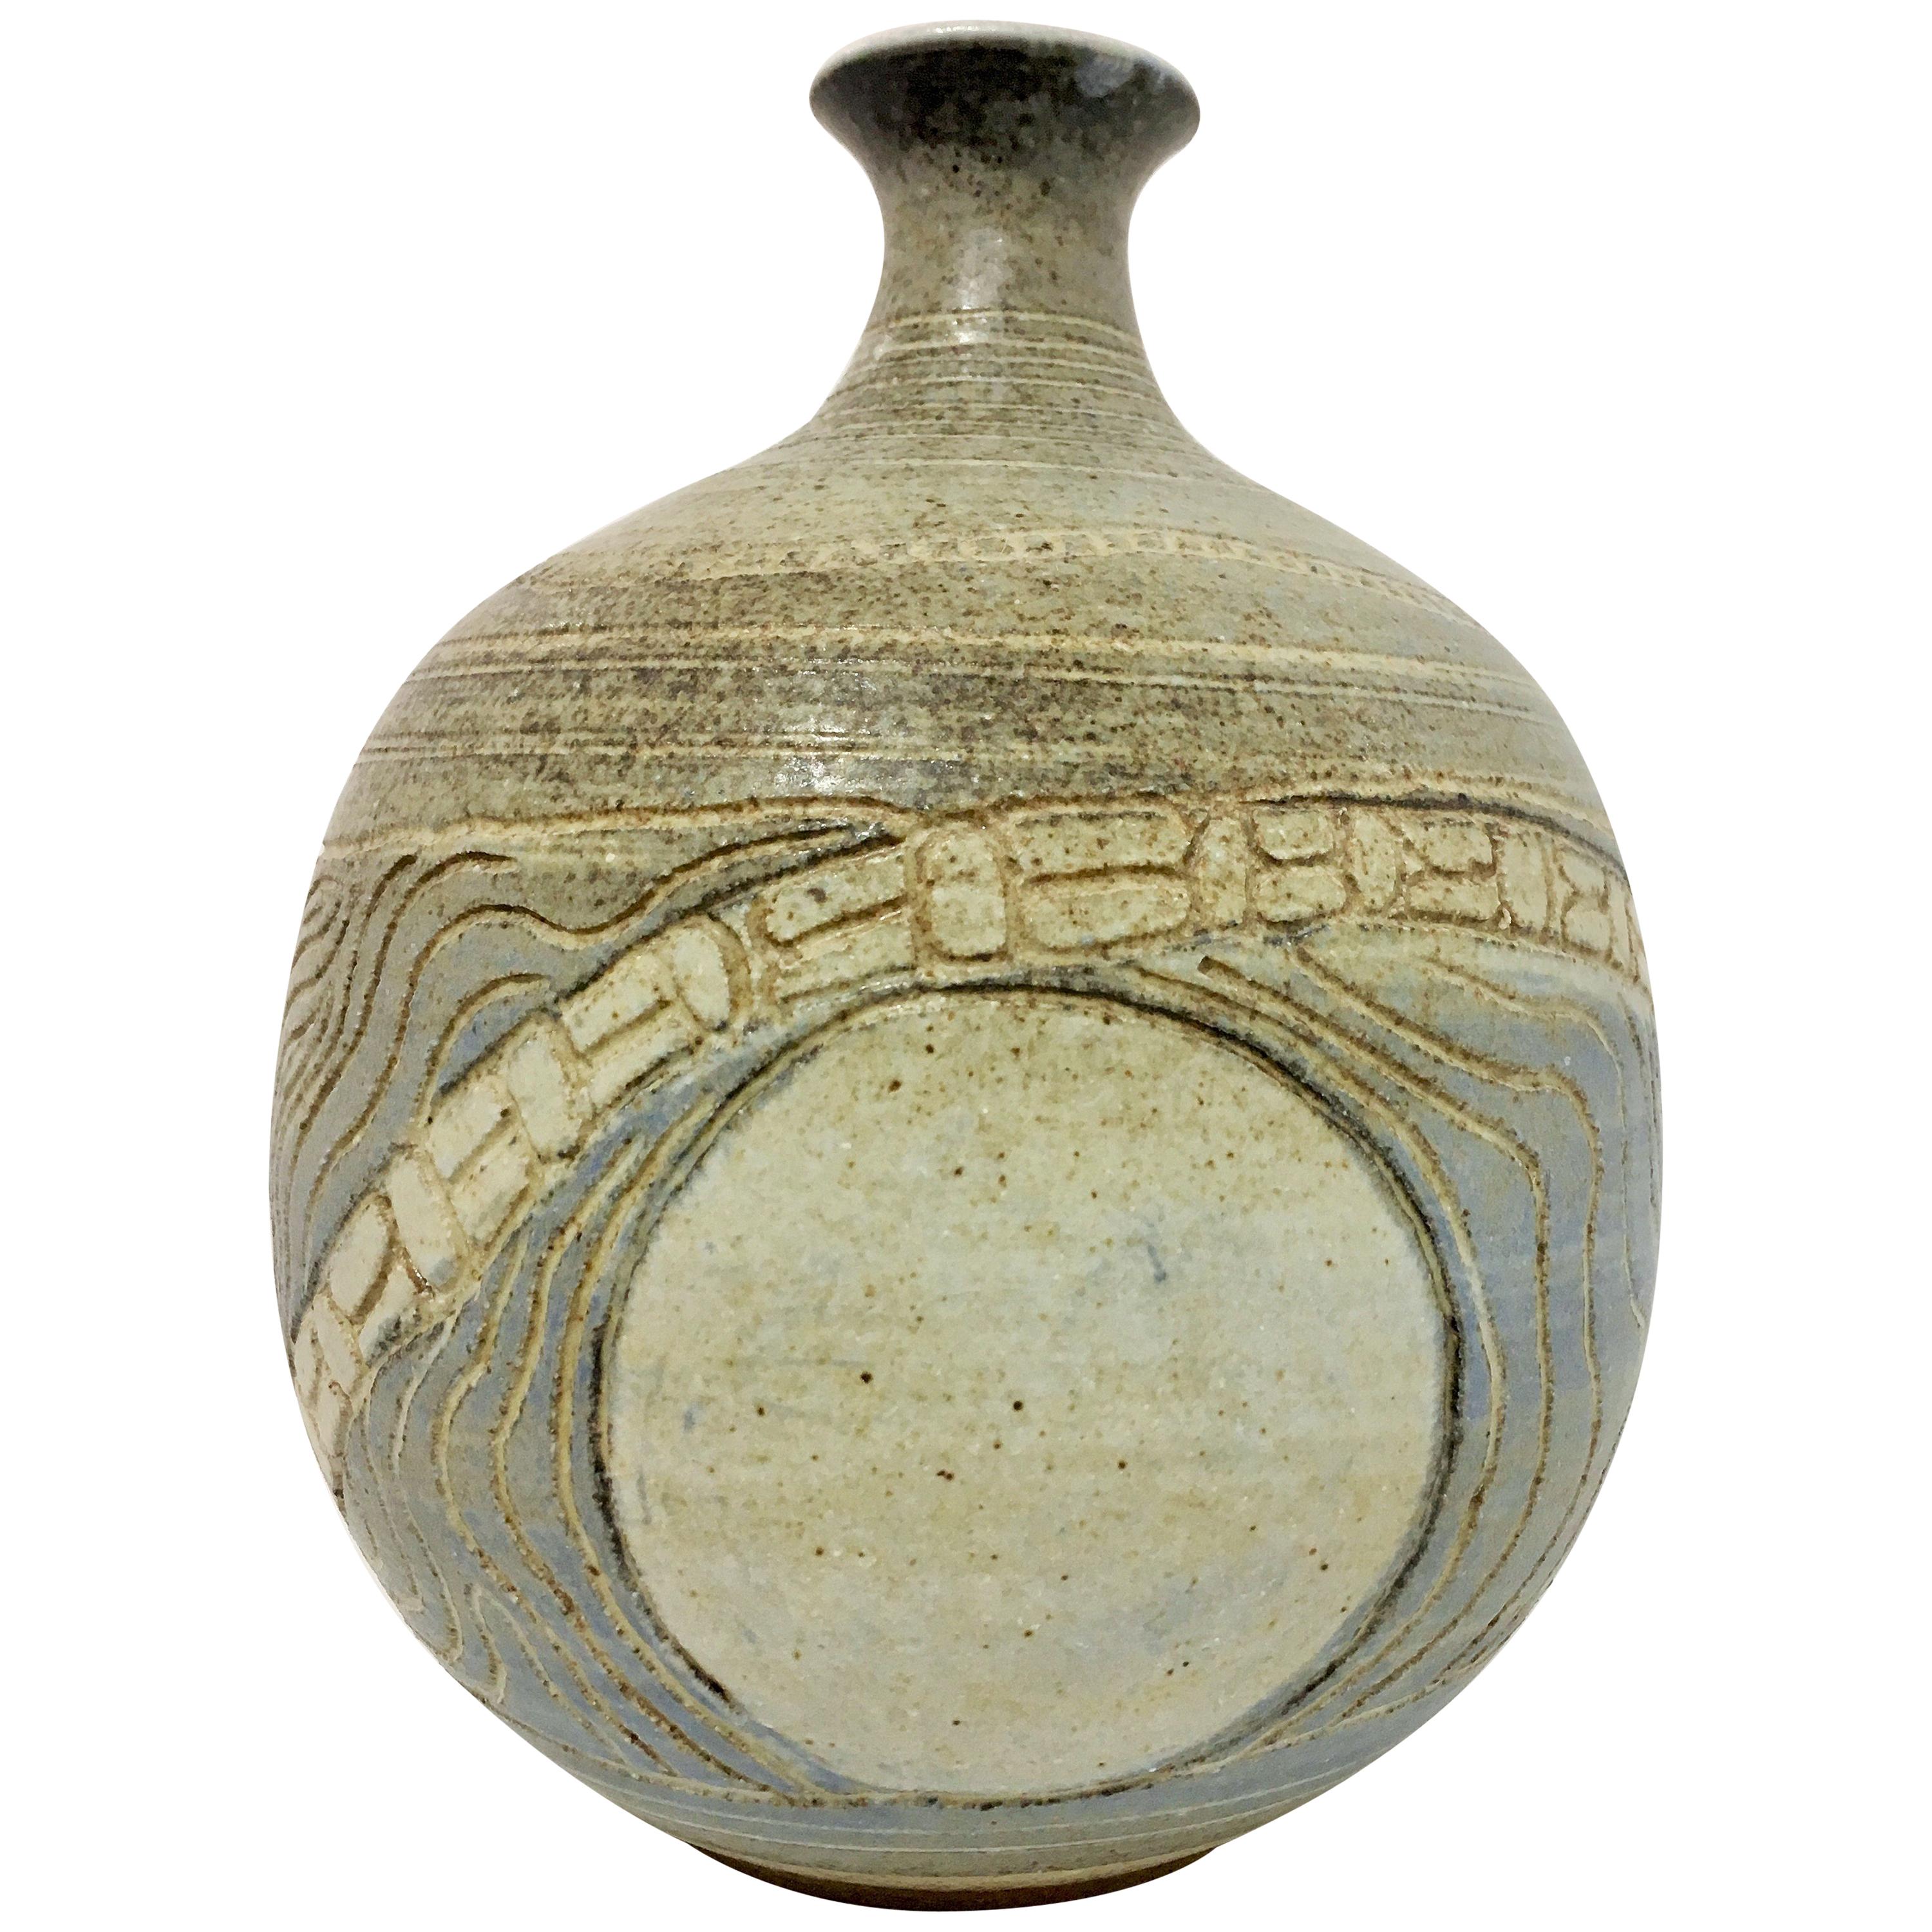 Ceramic Vase by Barbara Moorefield